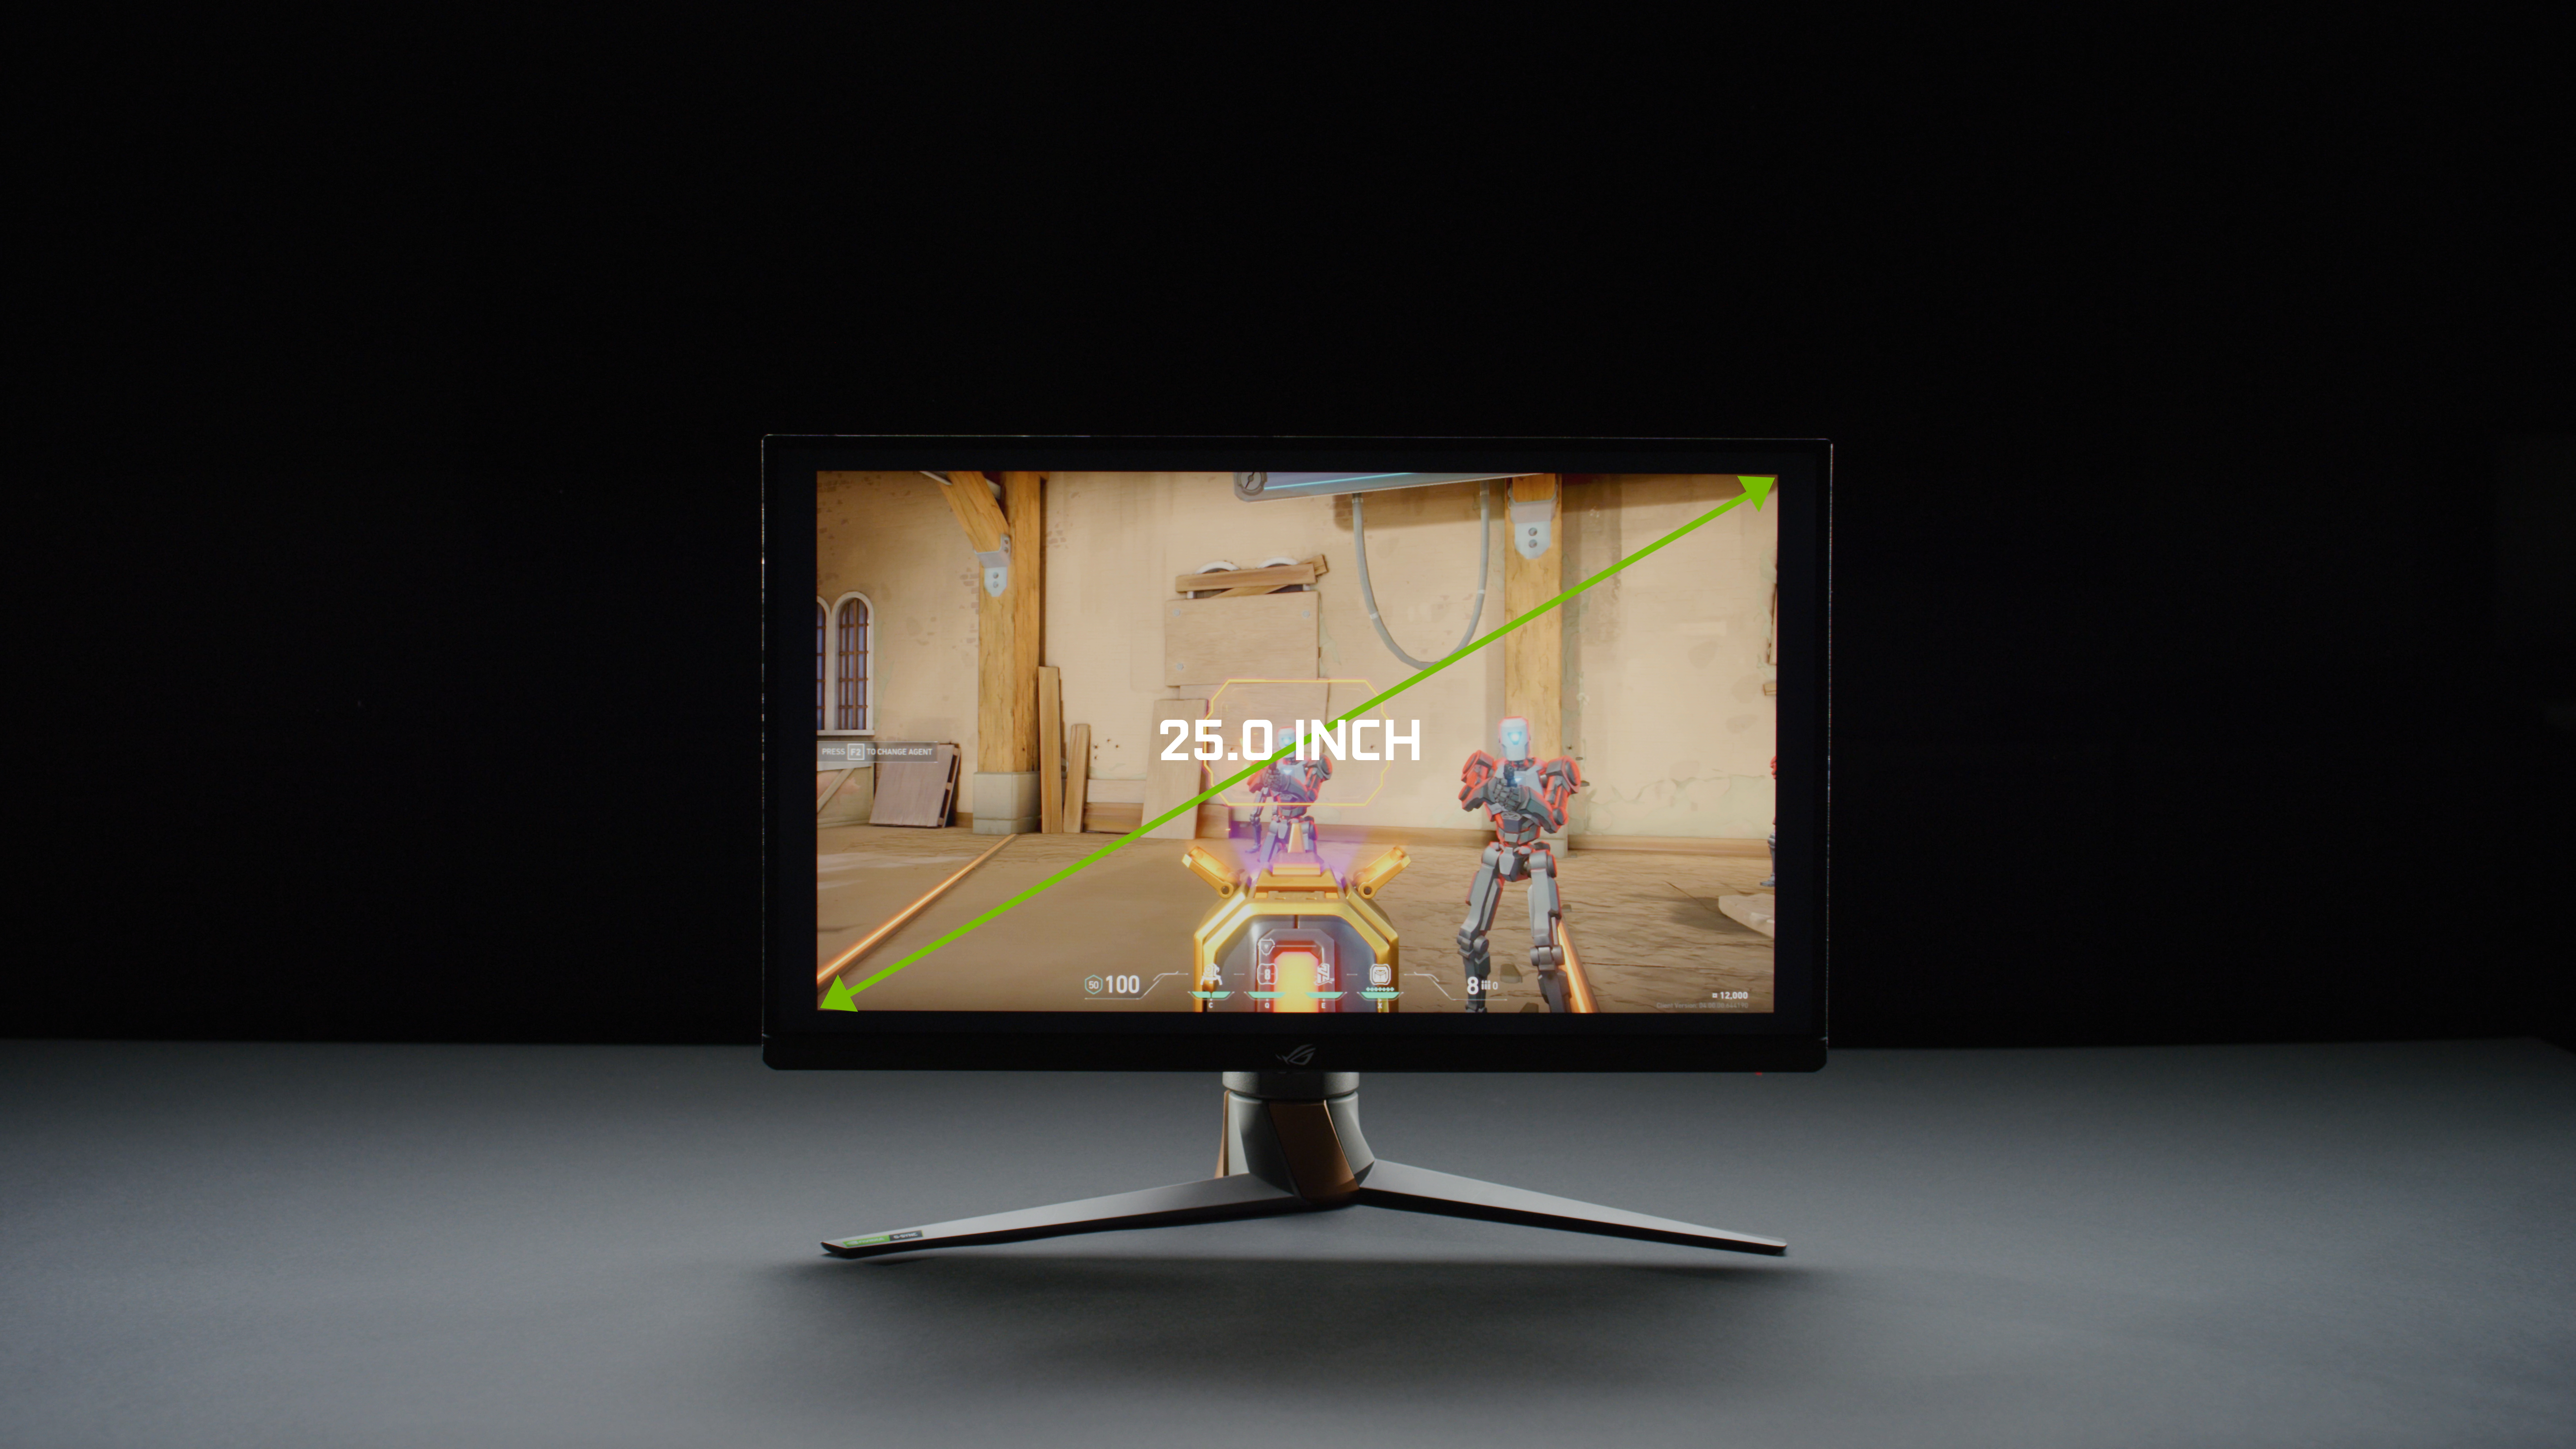 NVIDIA anuncia monitores G-SYNC con tasa de refresco de 360 Hz